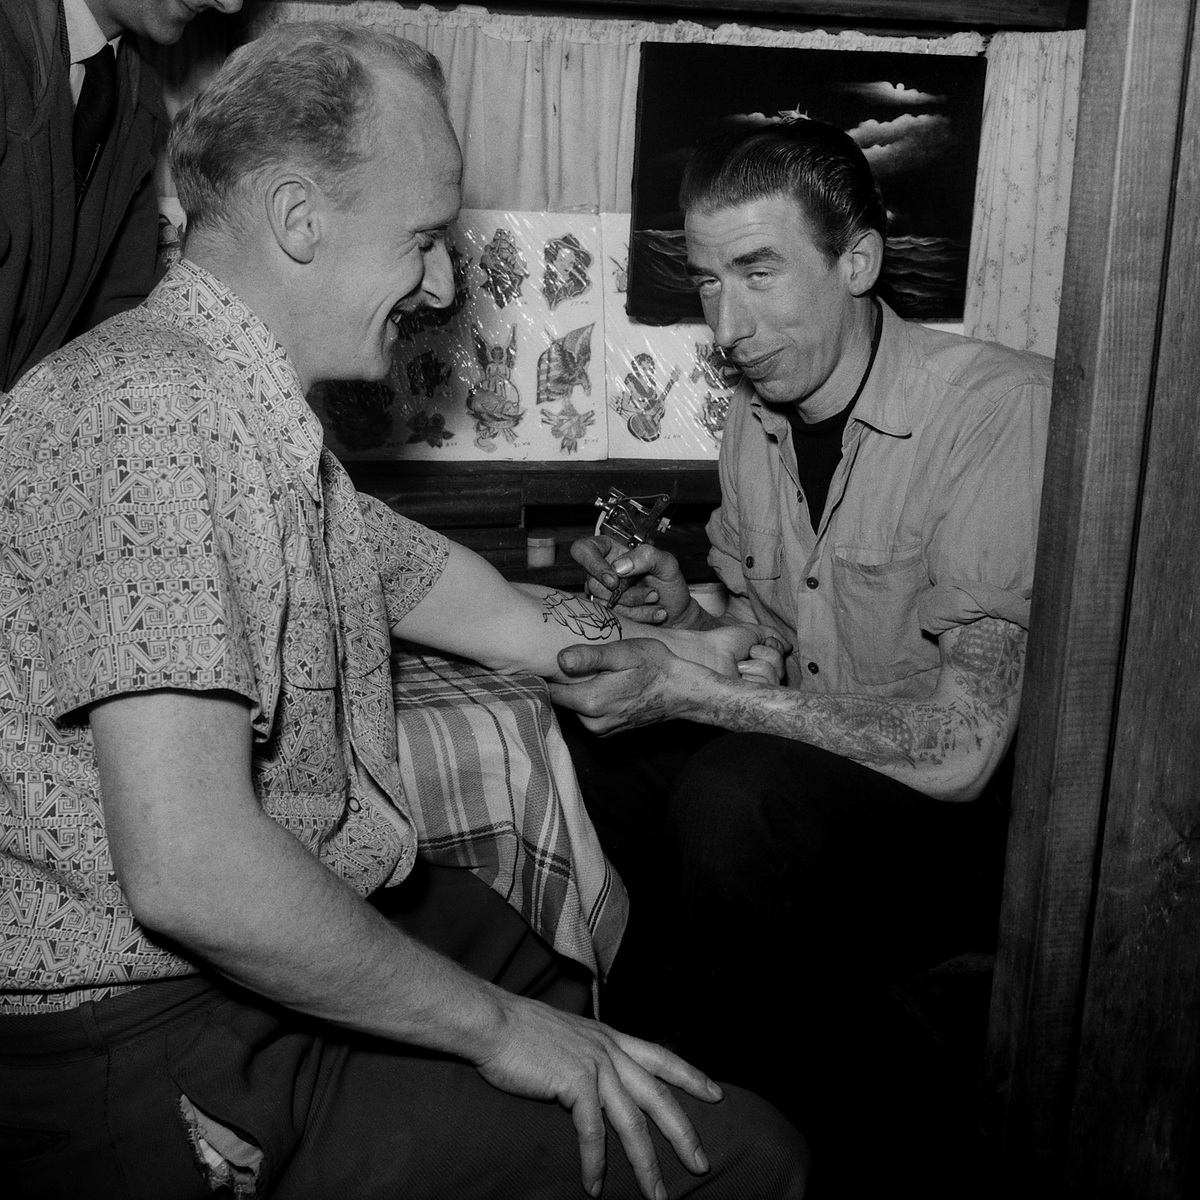 Tatueraren Tato Jim från Danmark på besök med sin rullande tatuerarstudio, 1956.